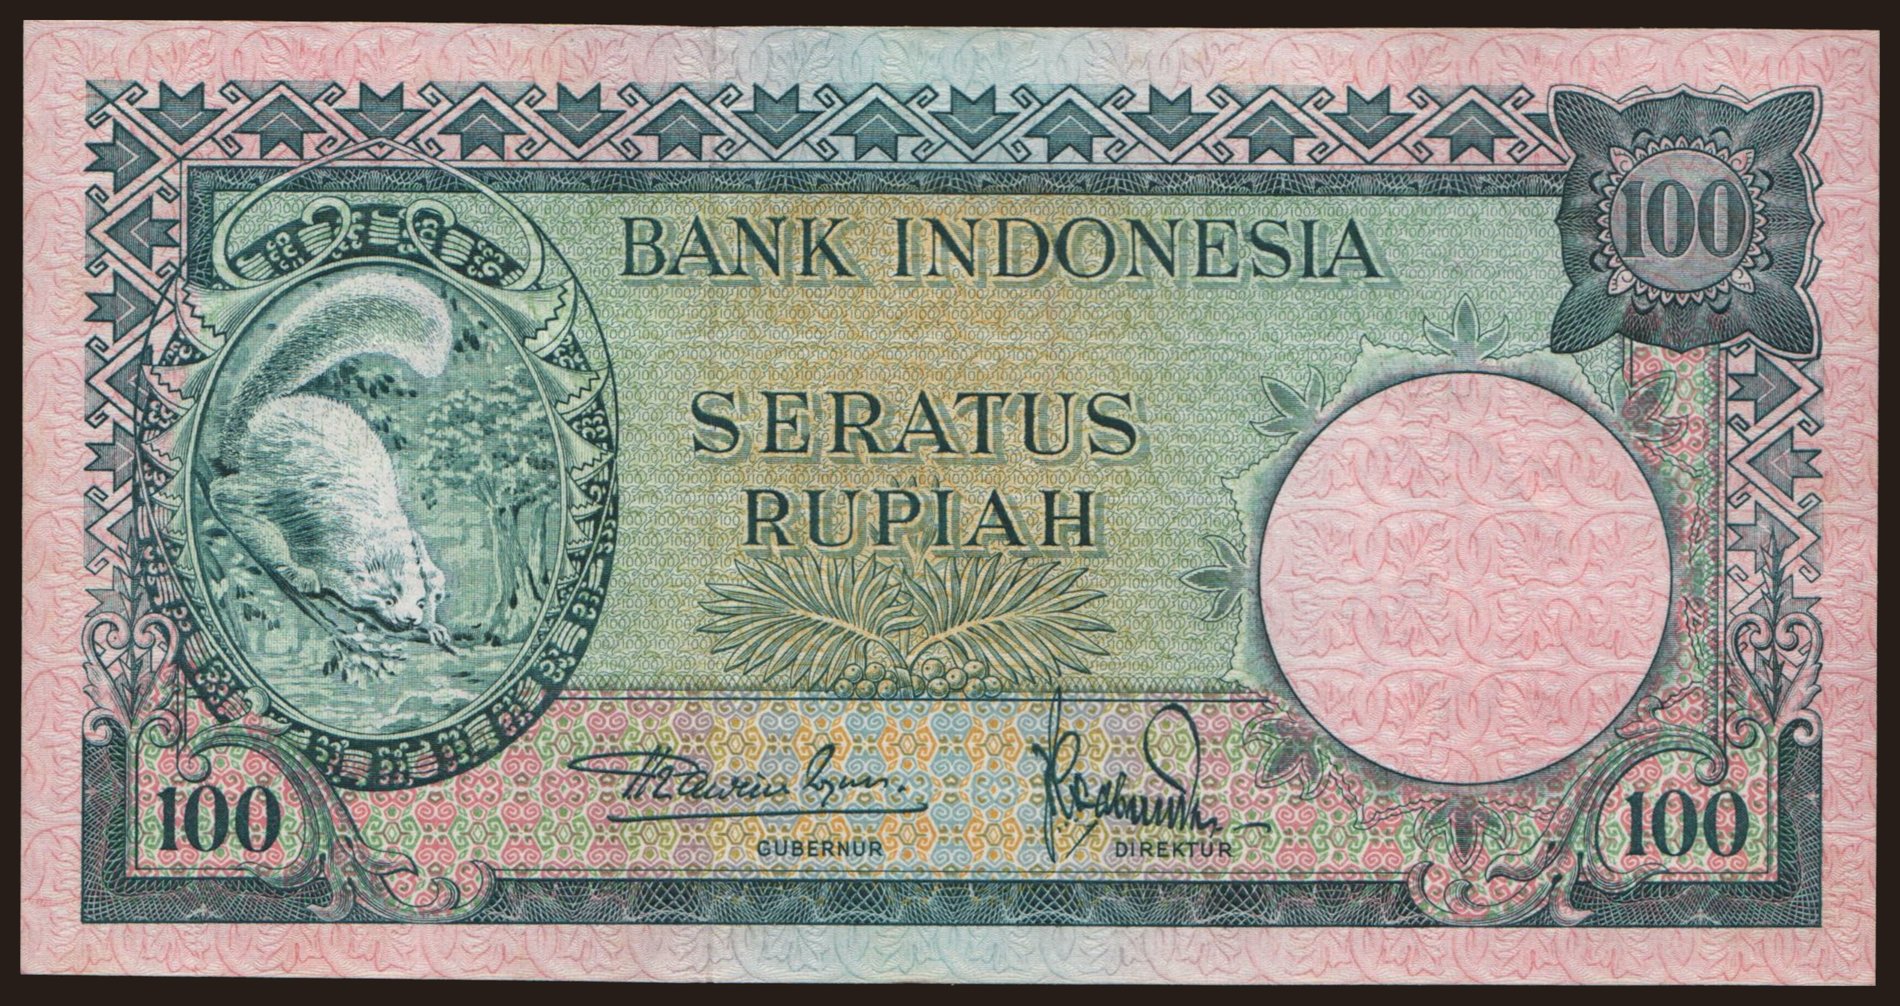 100 rupiah, 1957